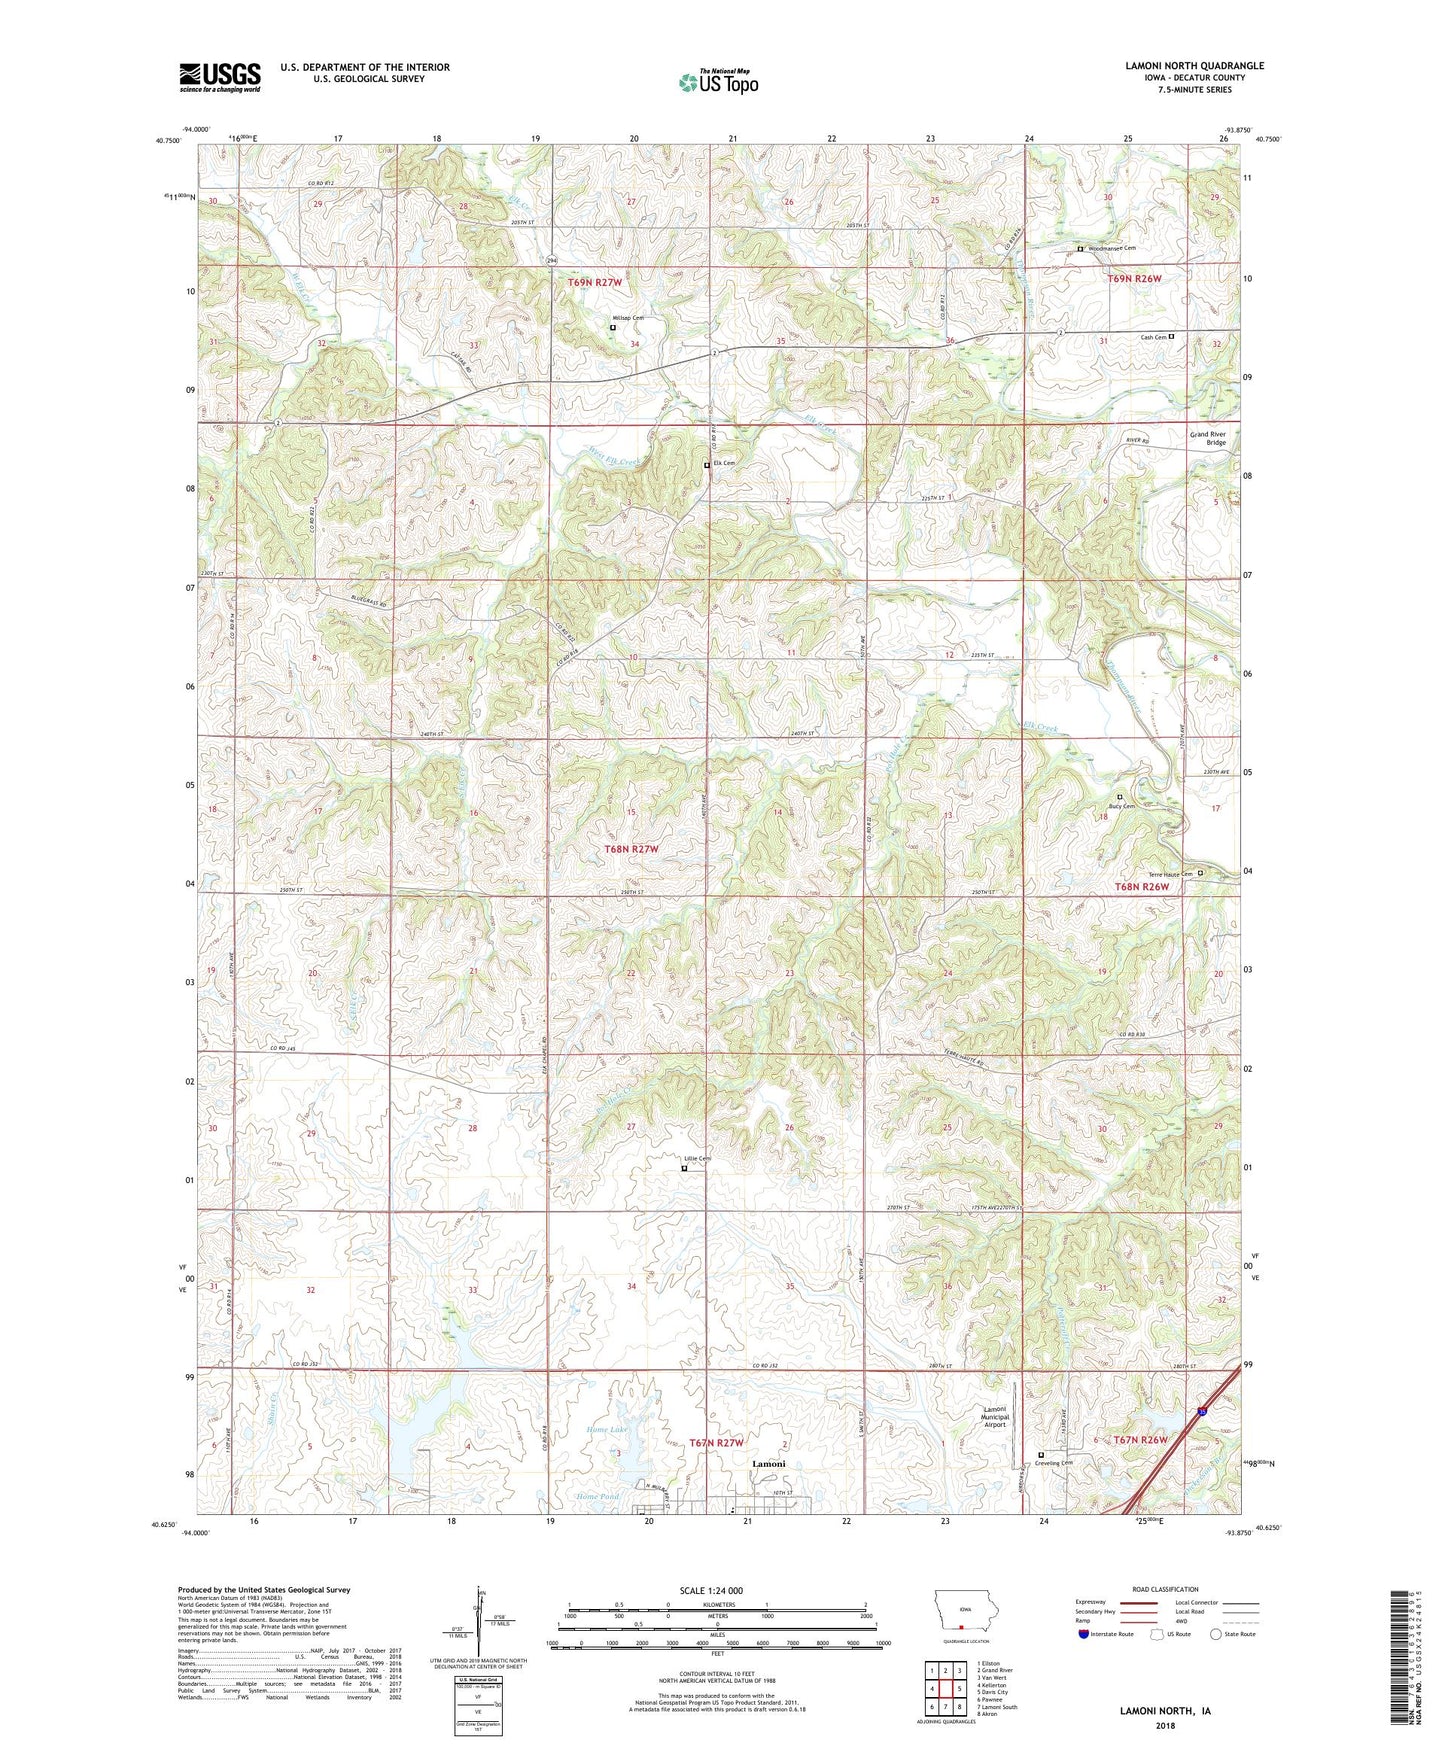 Lamoni North Iowa US Topo Map Image